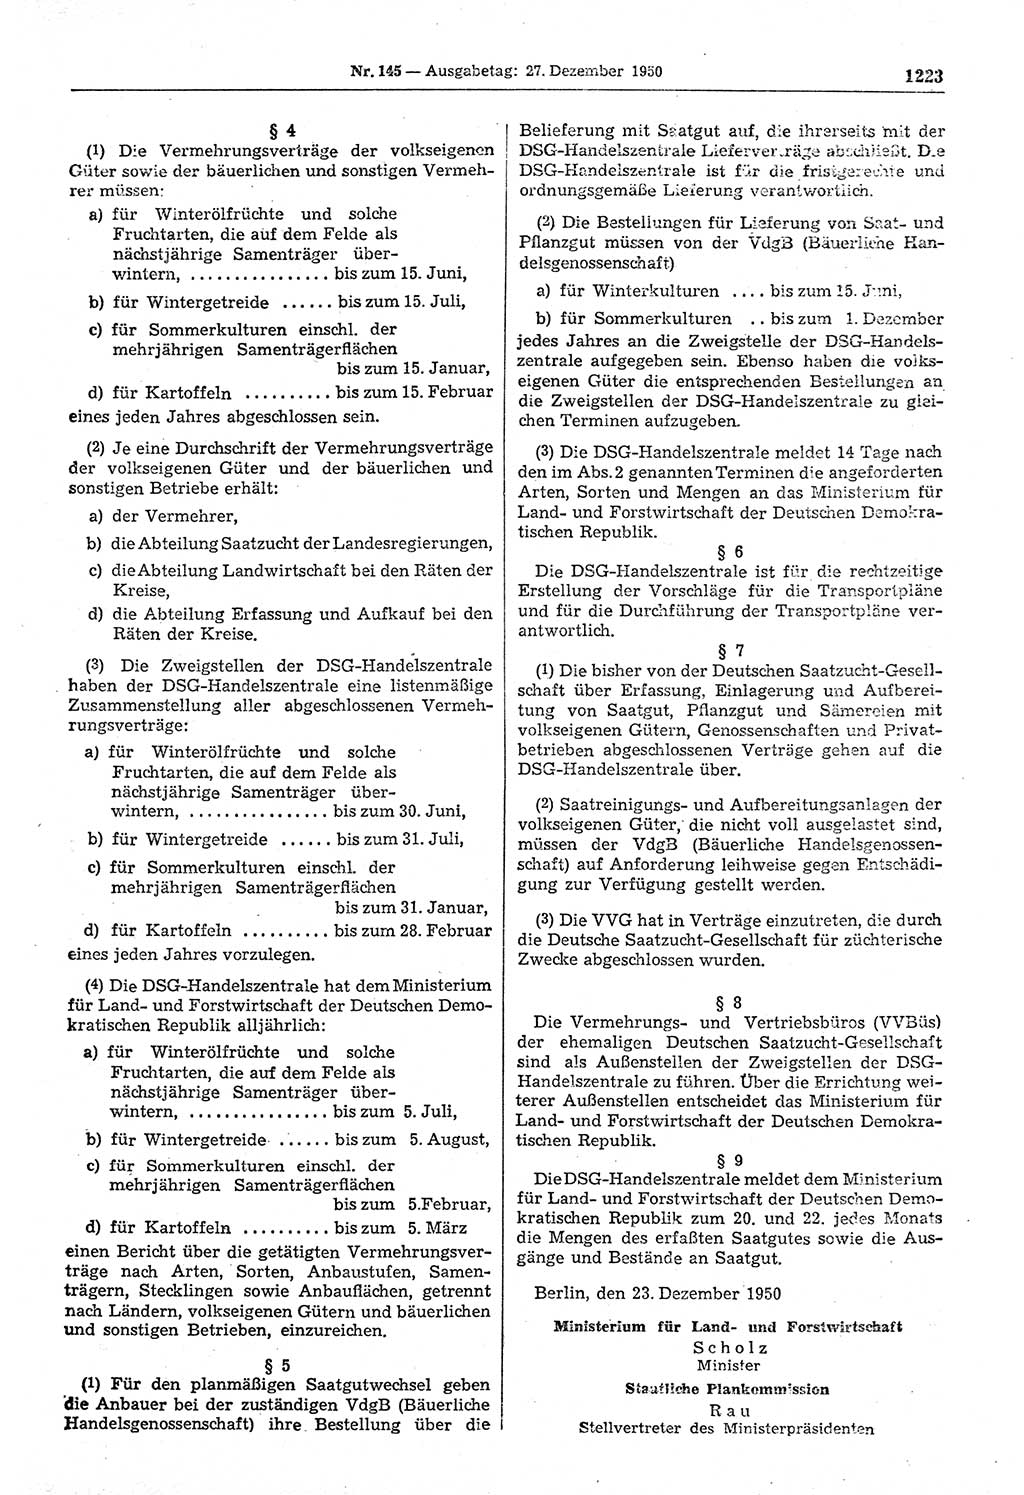 Gesetzblatt (GBl.) der Deutschen Demokratischen Republik (DDR) 1950, Seite 1223 (GBl. DDR 1950, S. 1223)